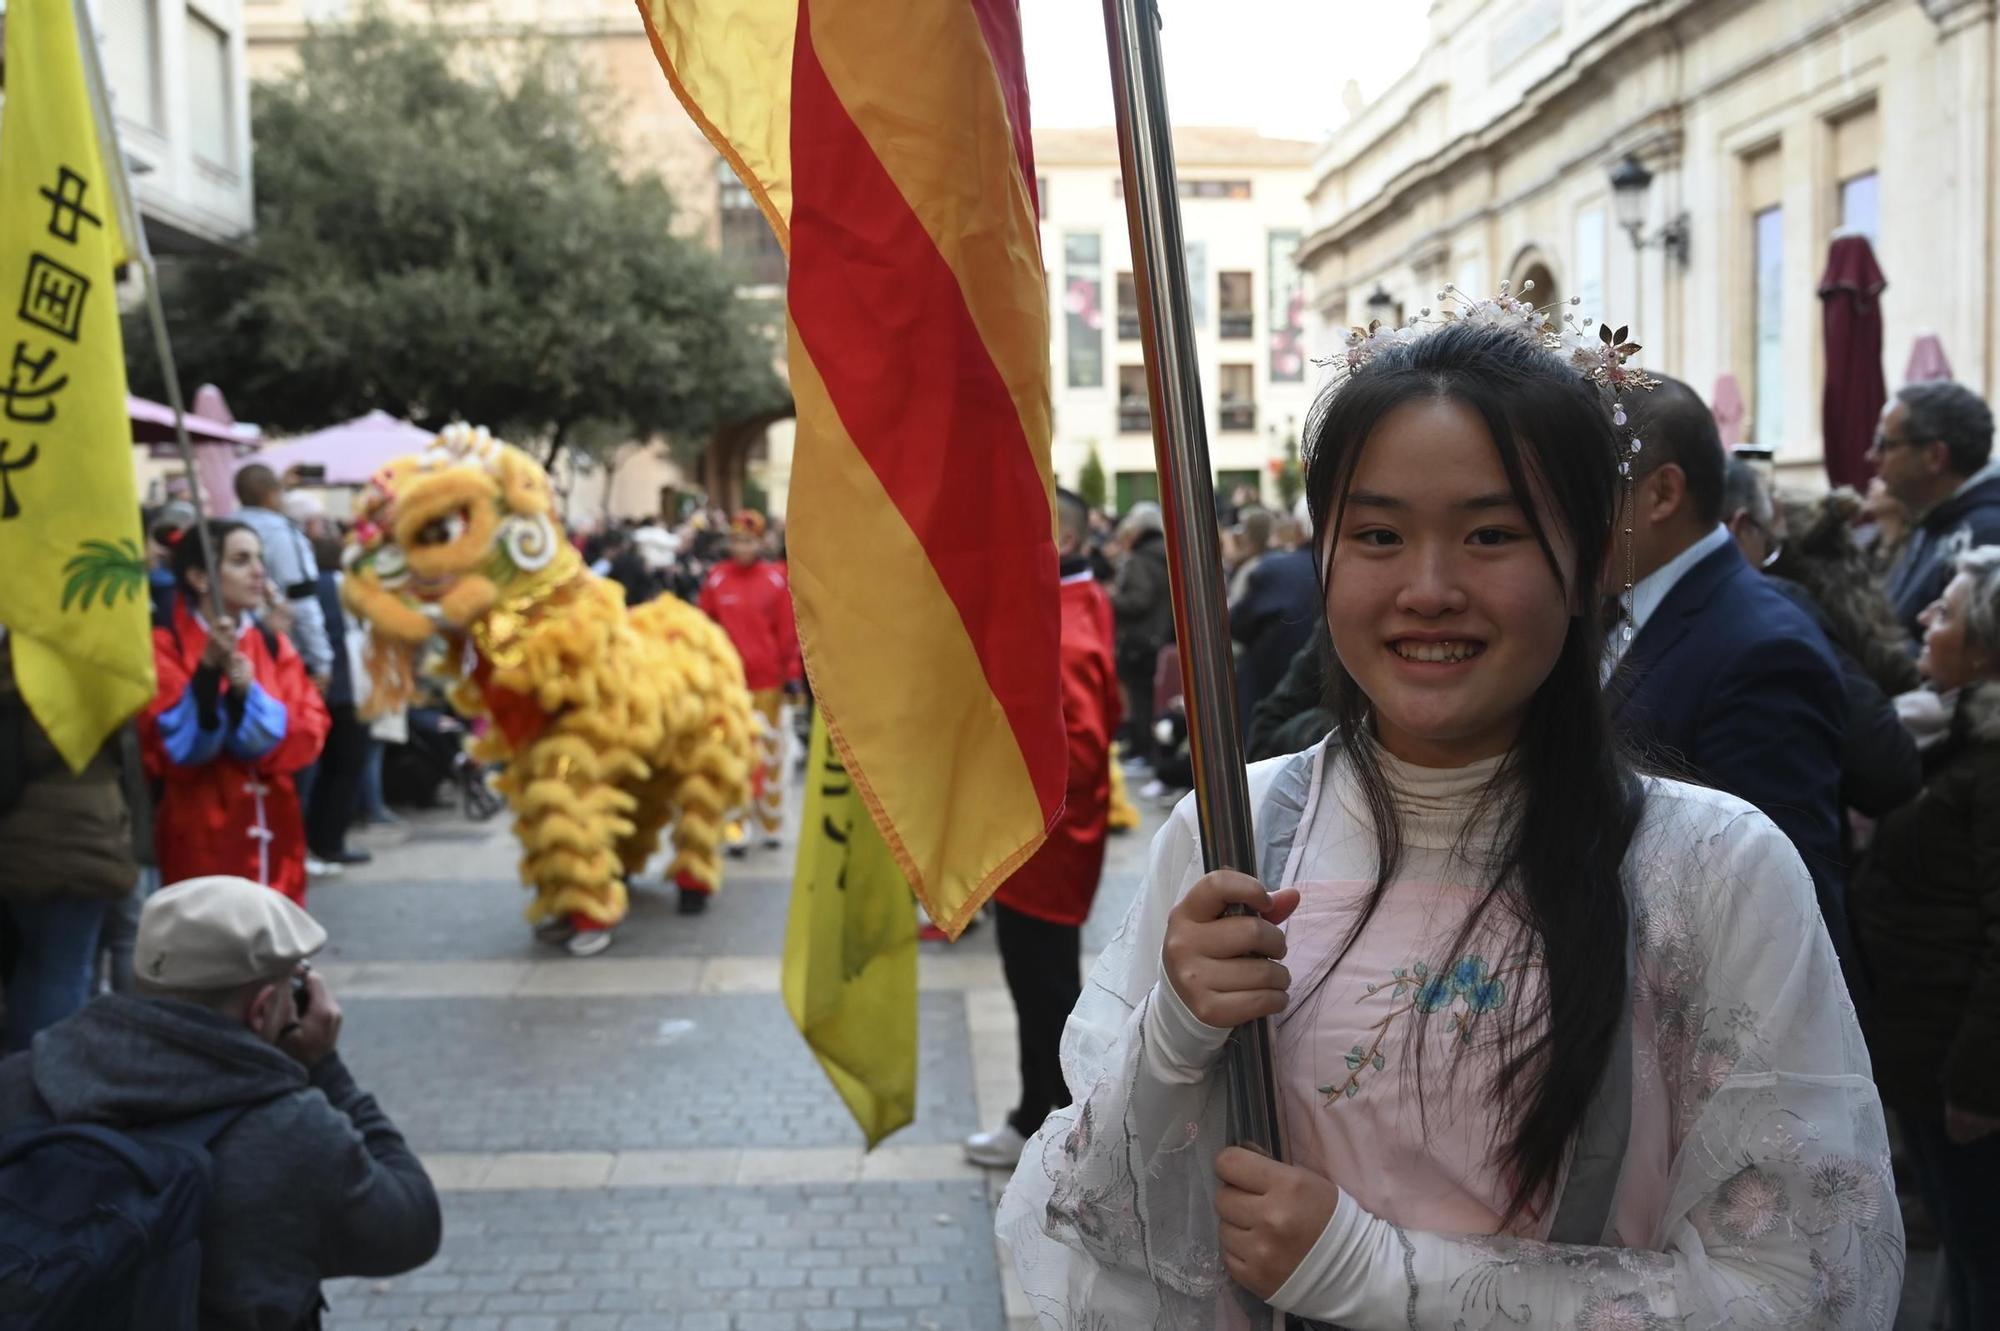 El año del dragón: espectacular desfile en Castelló